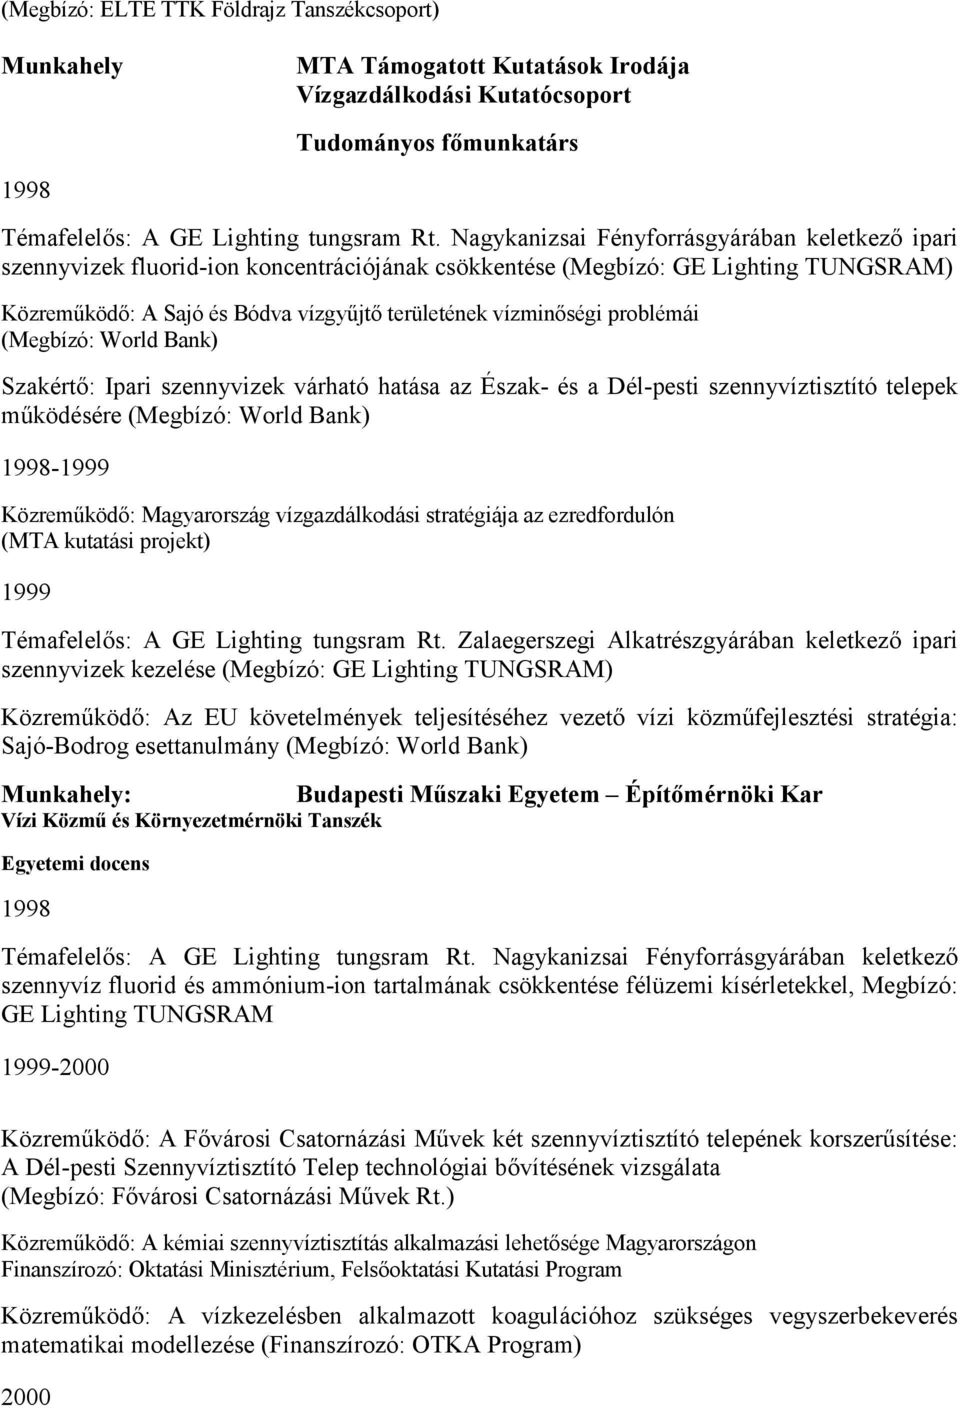 Dr. Licskó István tudományos önéletrajza és publikációi - PDF Free Download